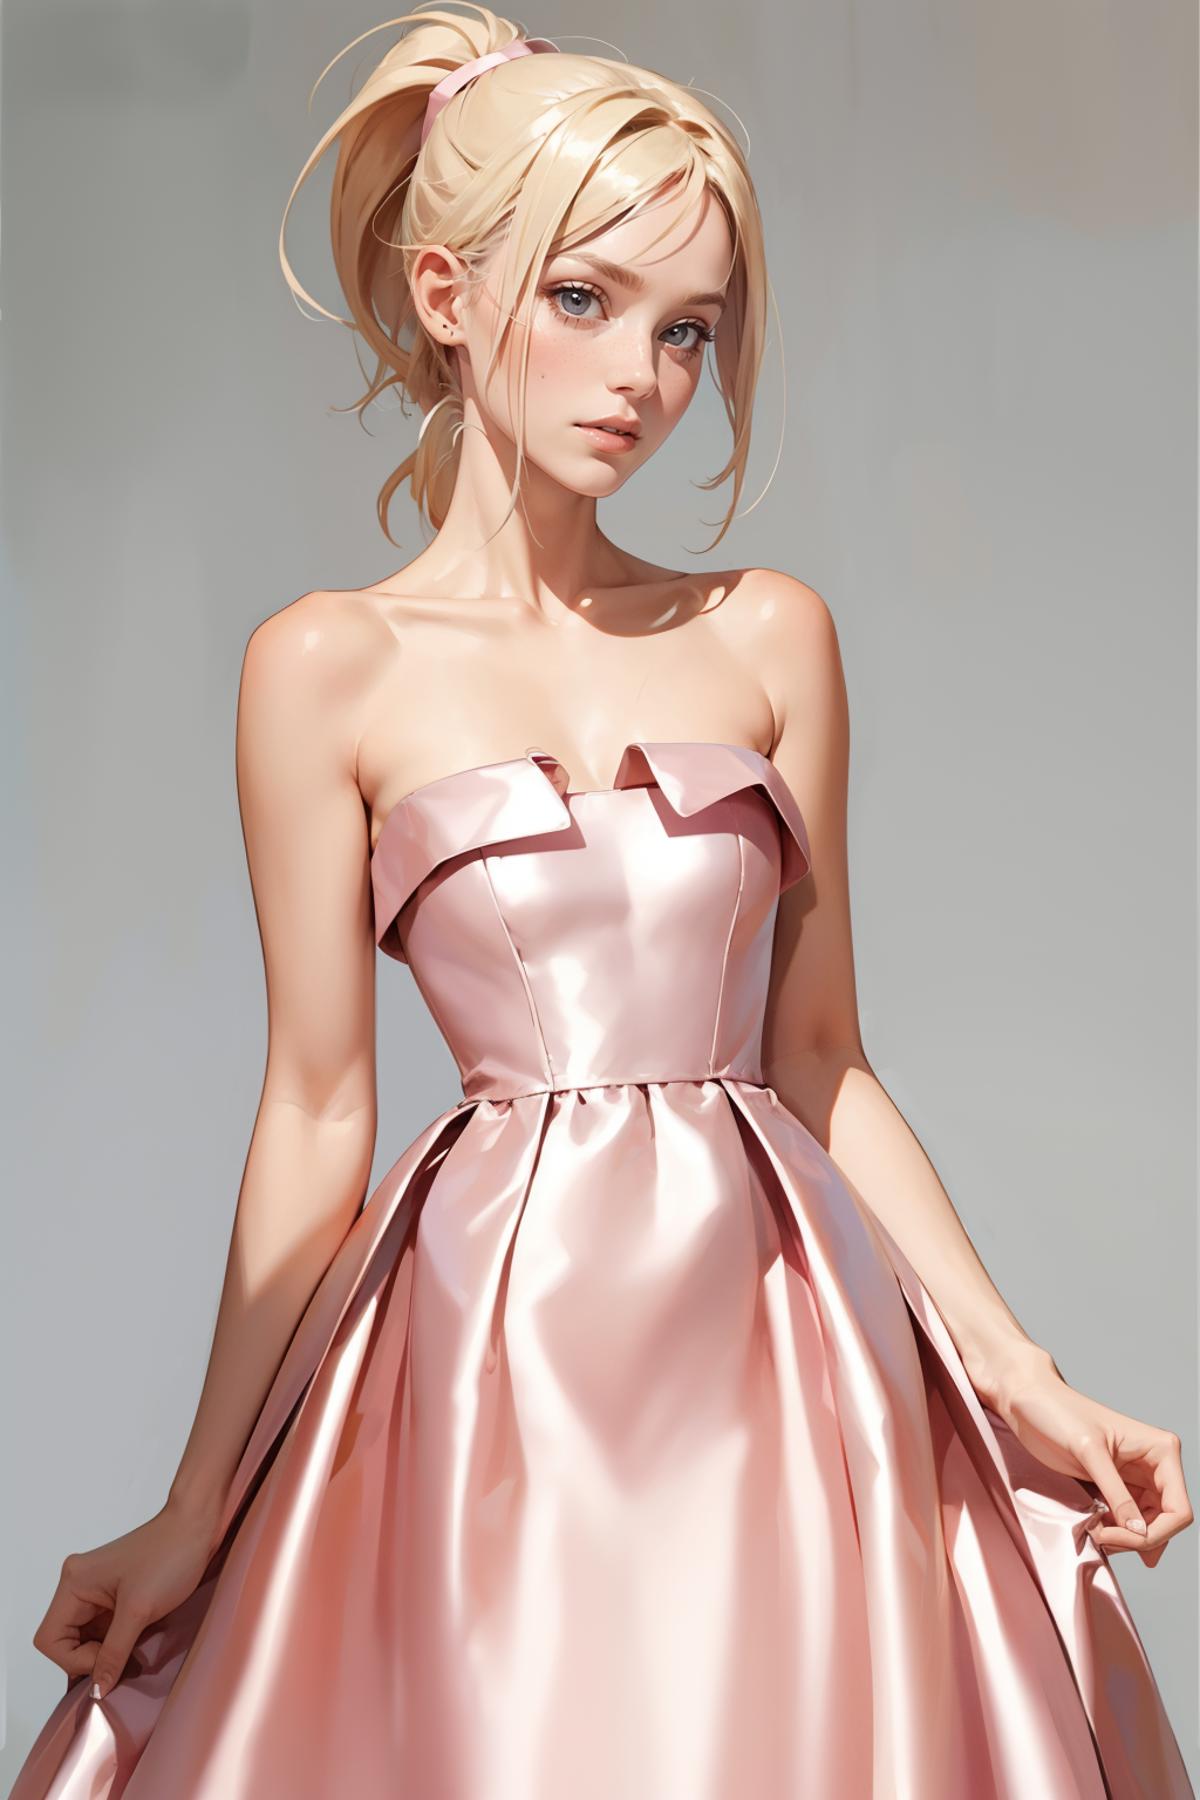 Short Vintage Light Pink Dress image by freckledvixon